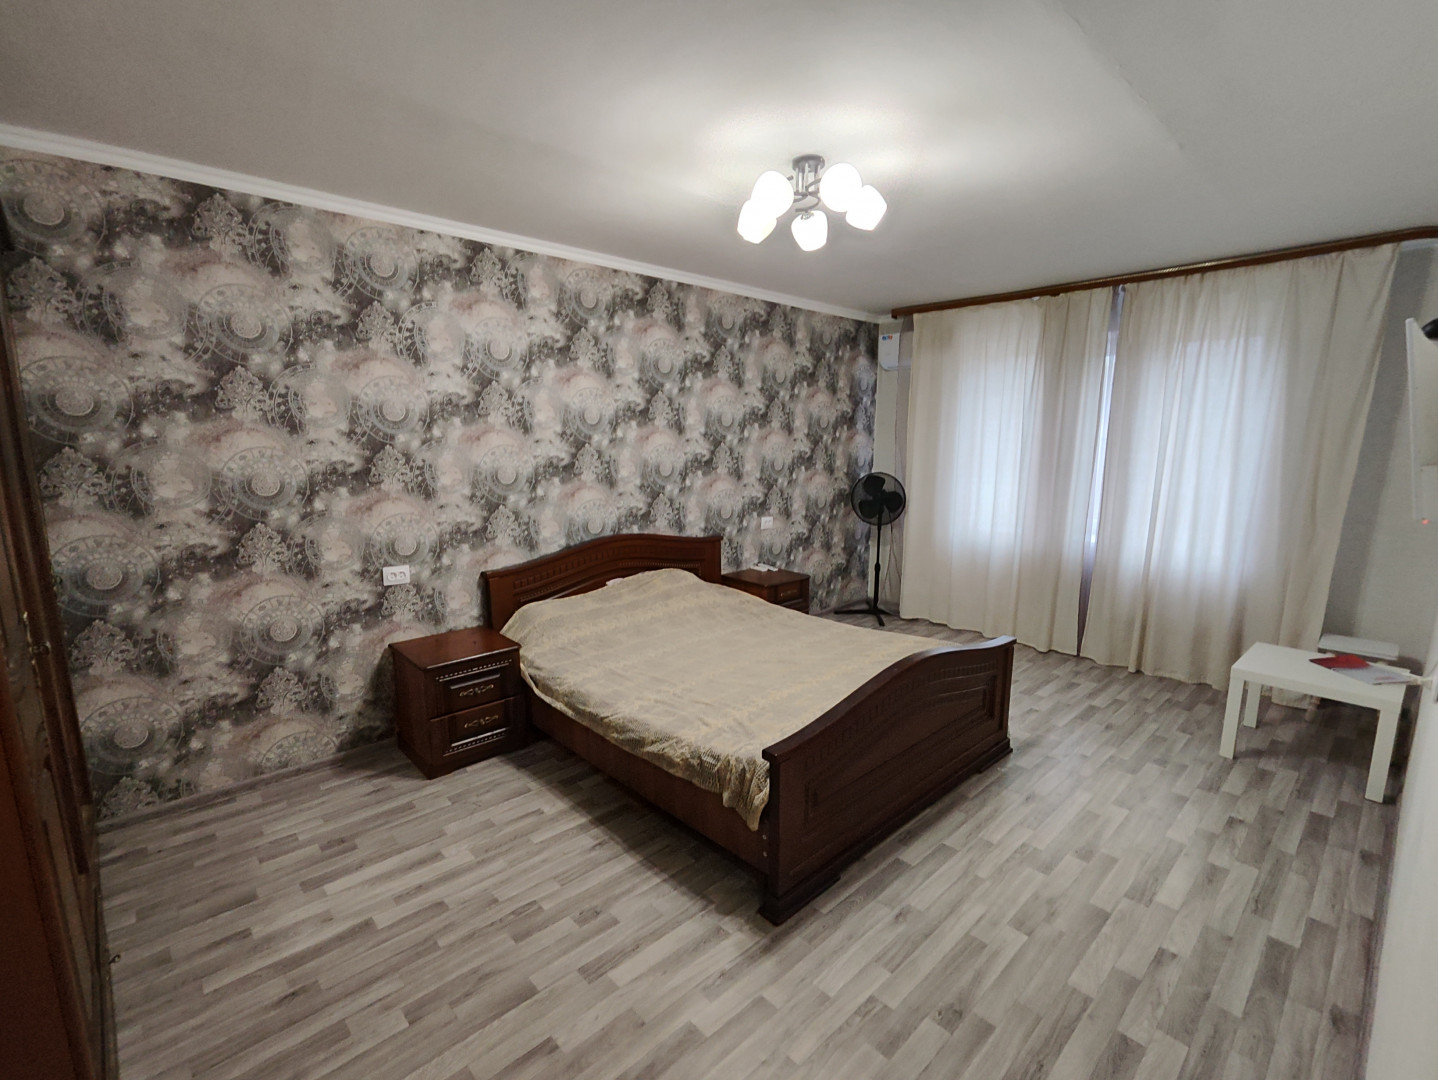 Квартира 1 комнатная в Майкоп г. район Кондитерская ф-ка (за ж/д) р-н